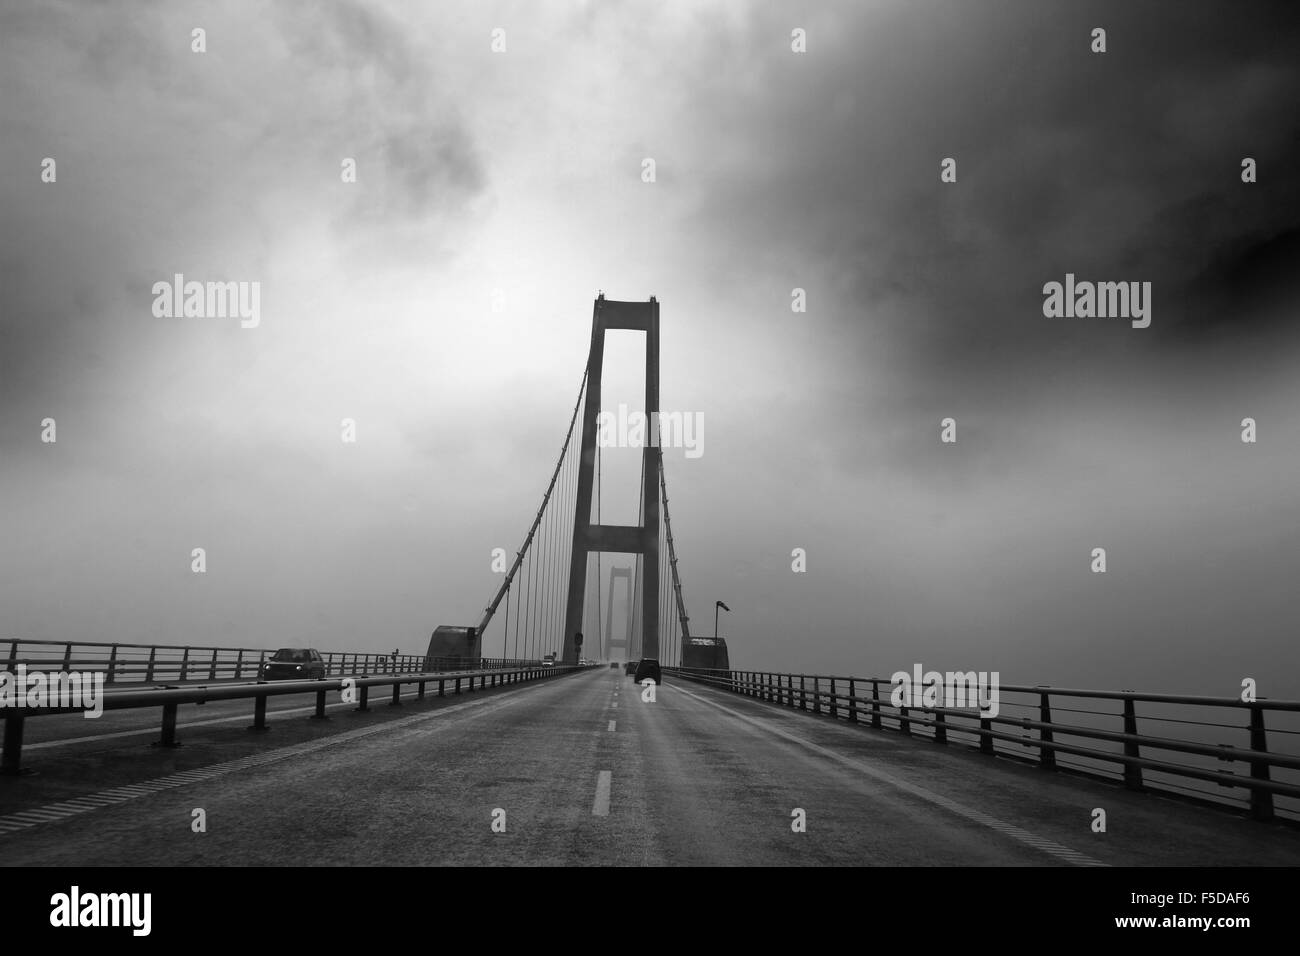 Pont entre la Fionie et seeland au Danemark. Pont du Grand Belt" (en danois : Storebaeltsbroen) Banque D'Images